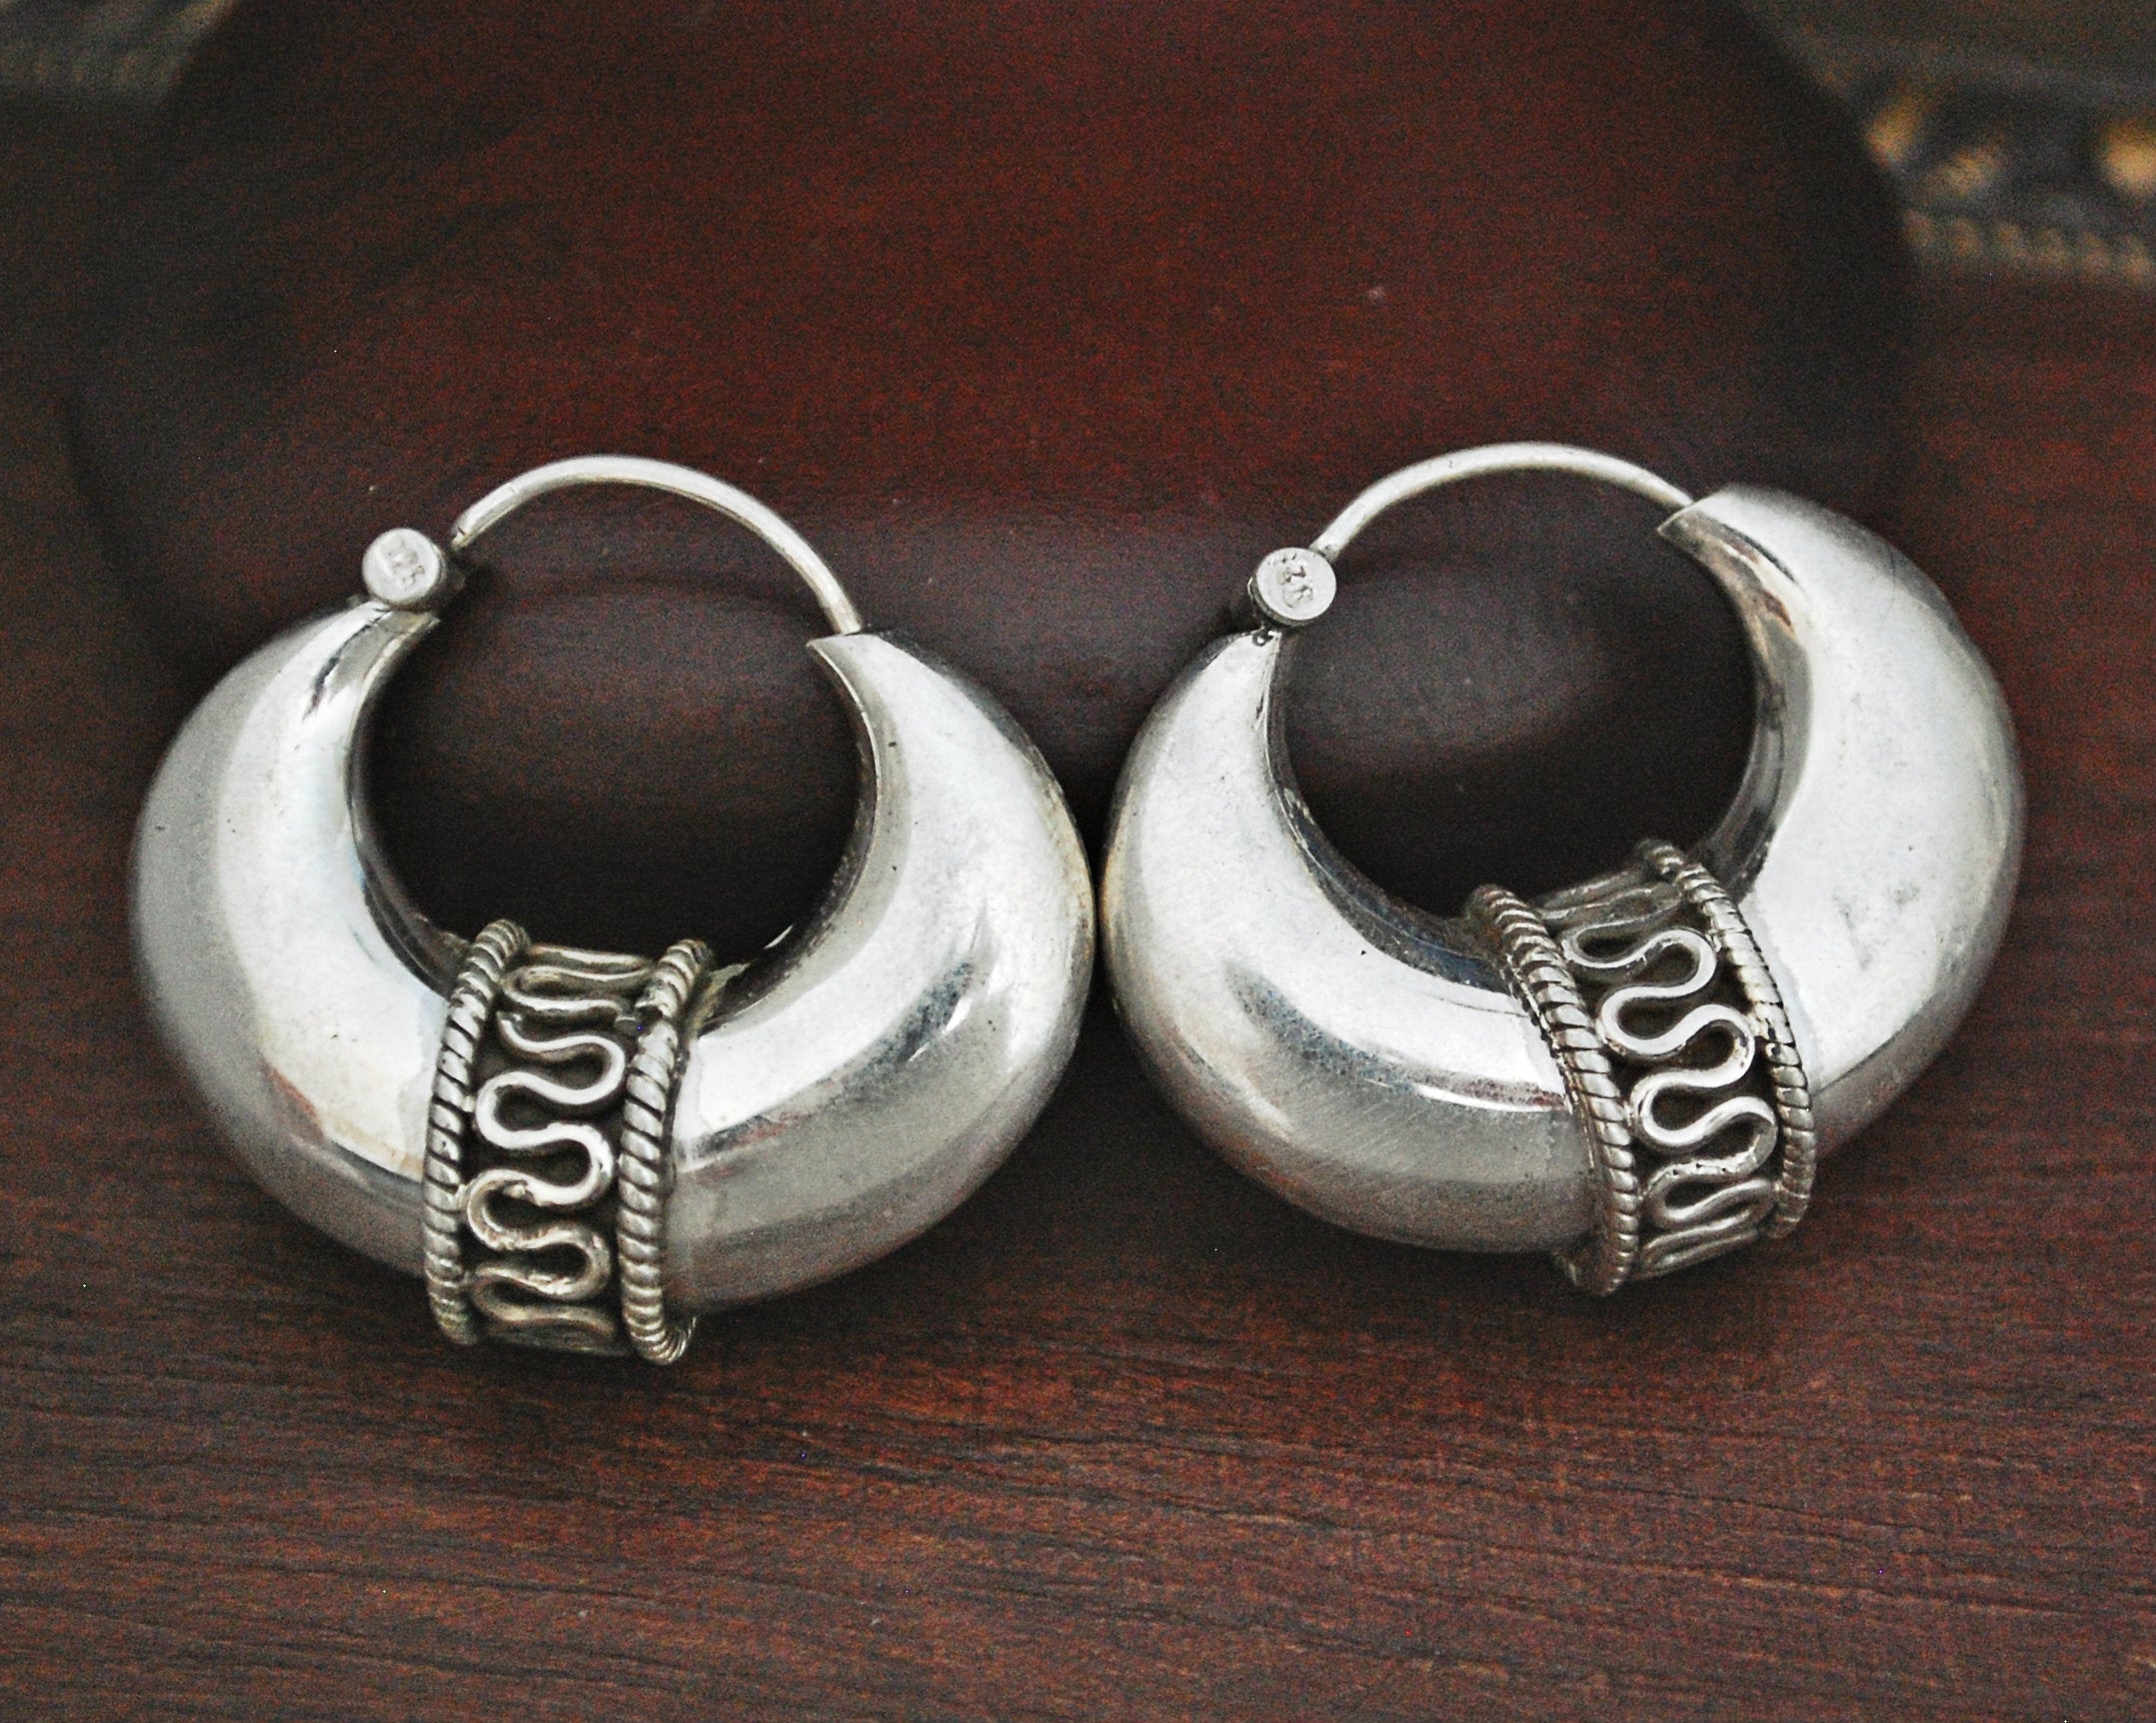 Substantial Ethnic Hoop Earrings with Wire Work - MEDIUM